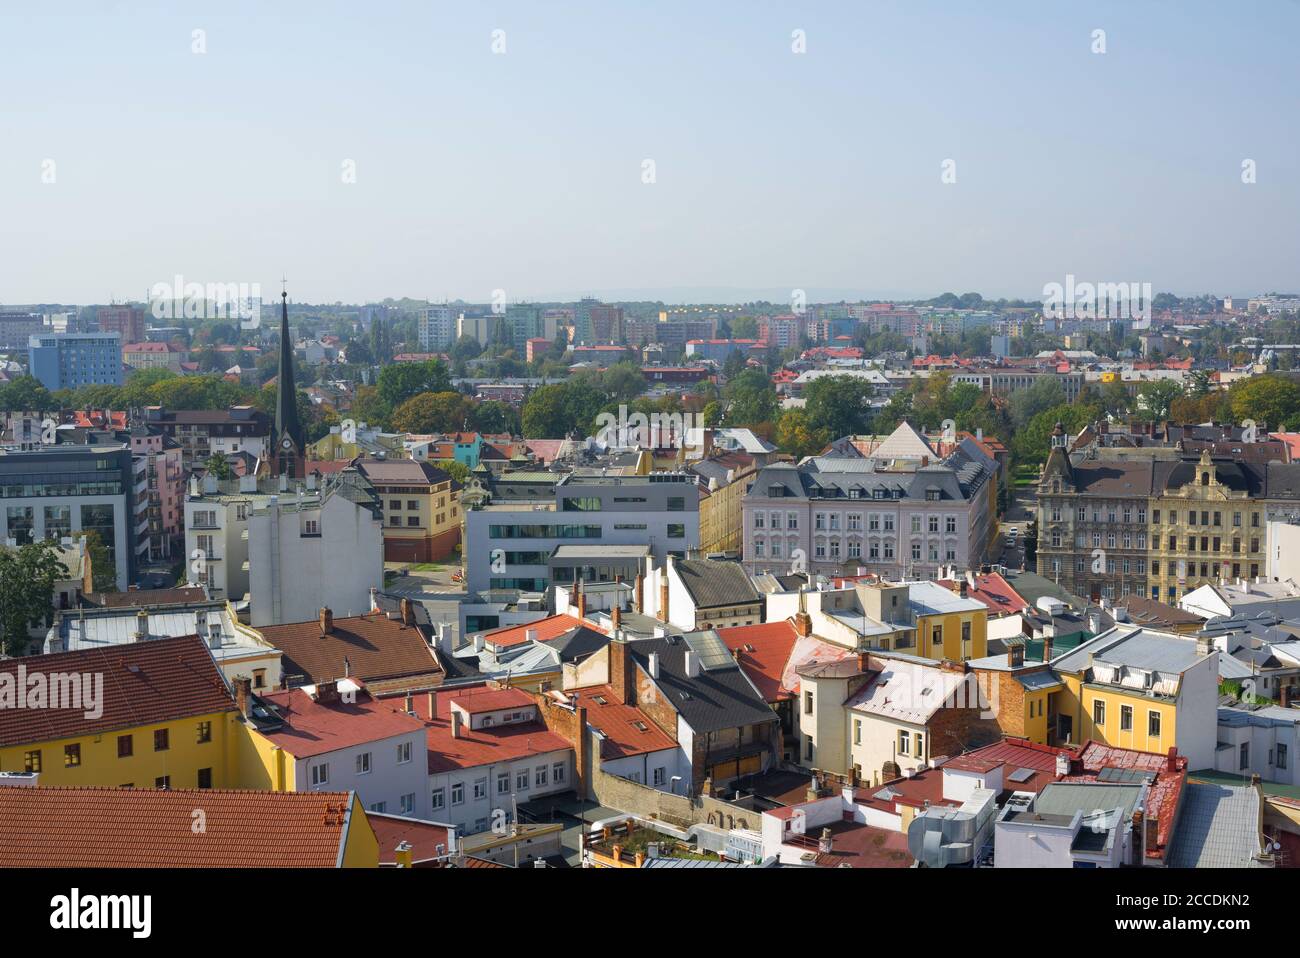 Stadtbild von Stadt und Stadt von oben. Alte und moderne Architektur in verschiedenen Stilen. Authentischer Urbanismus Stockfoto